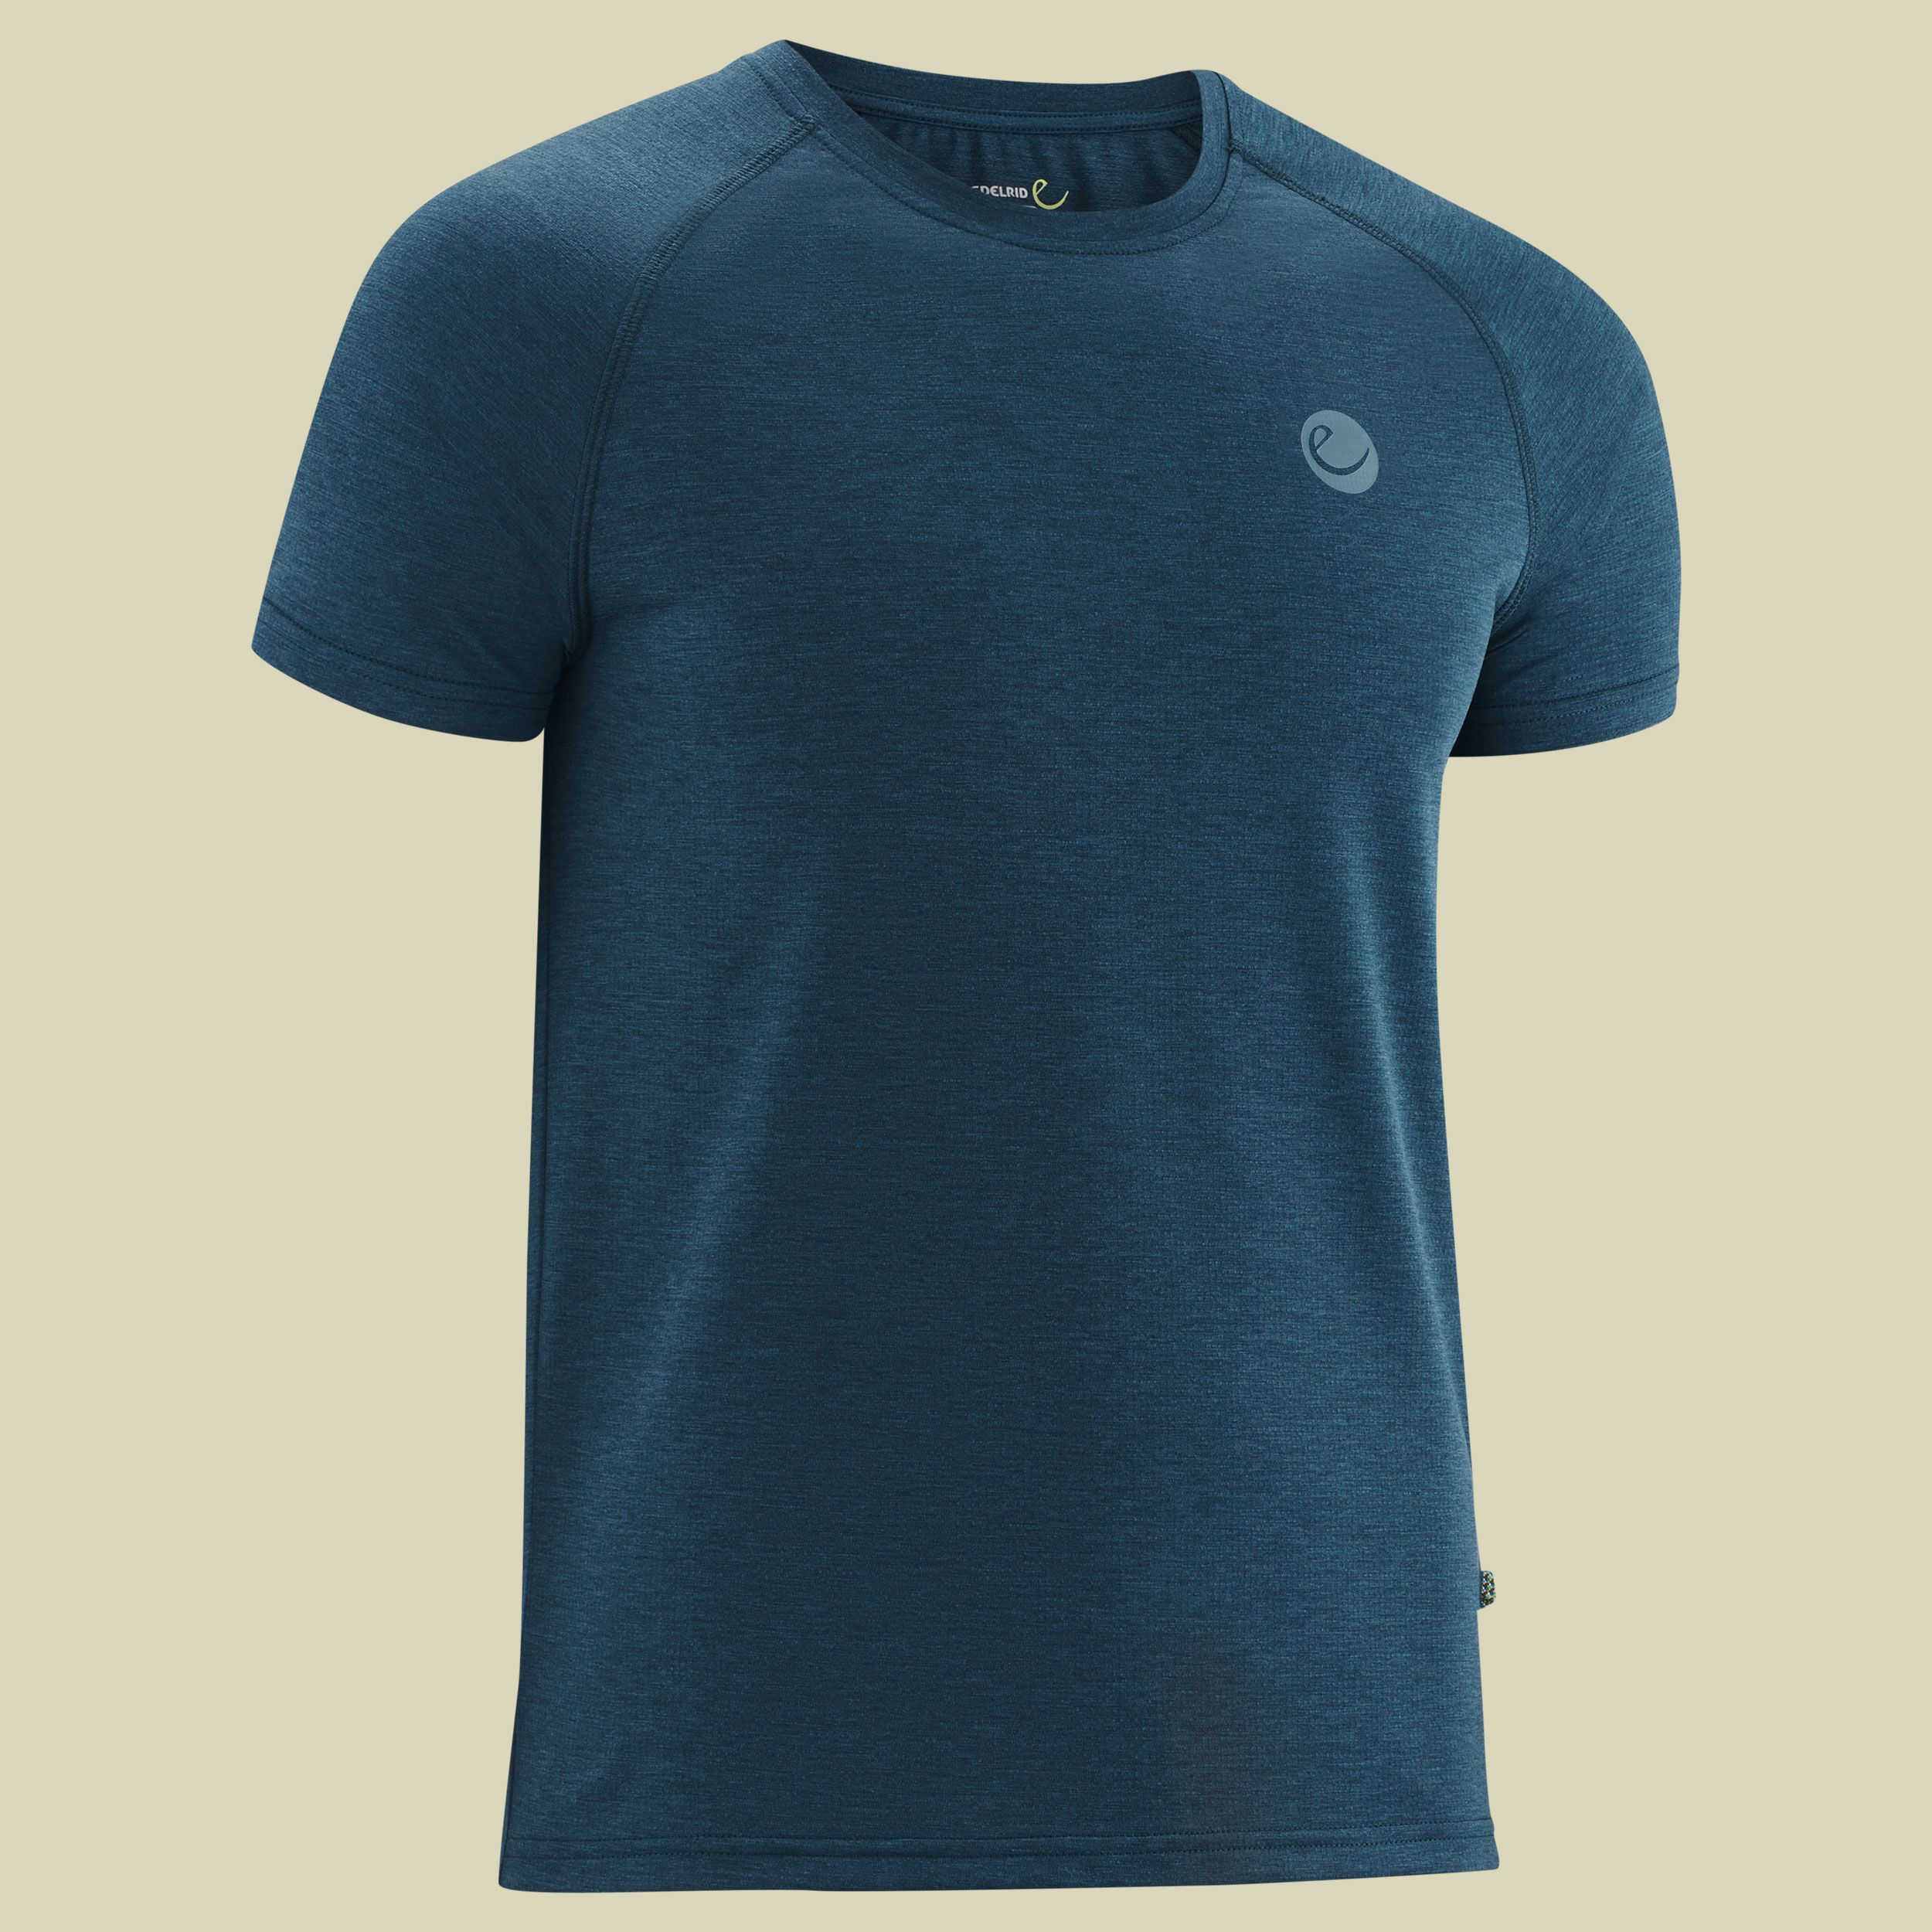 Esperanza T-Shirt Men S blau - blueberry